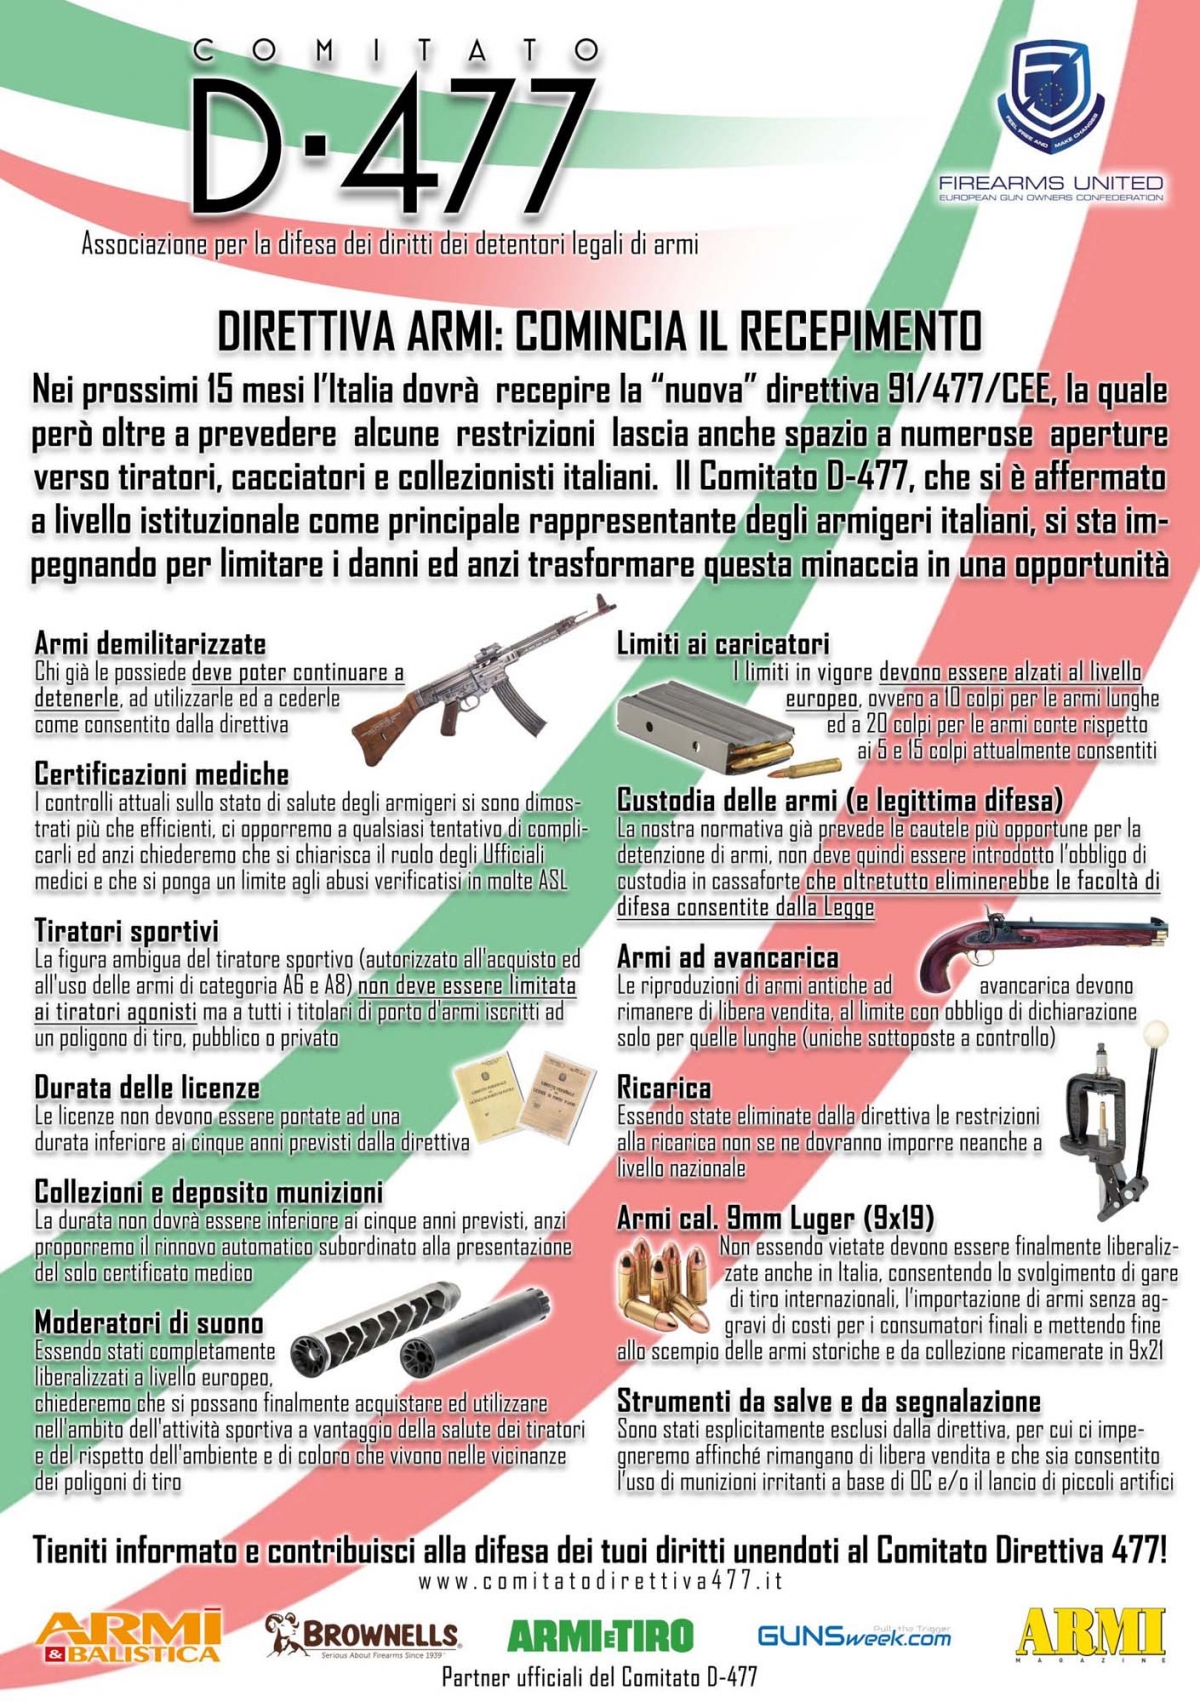 Il comparto armiero italiano unito a sostegno del Comitato Direttiva 477